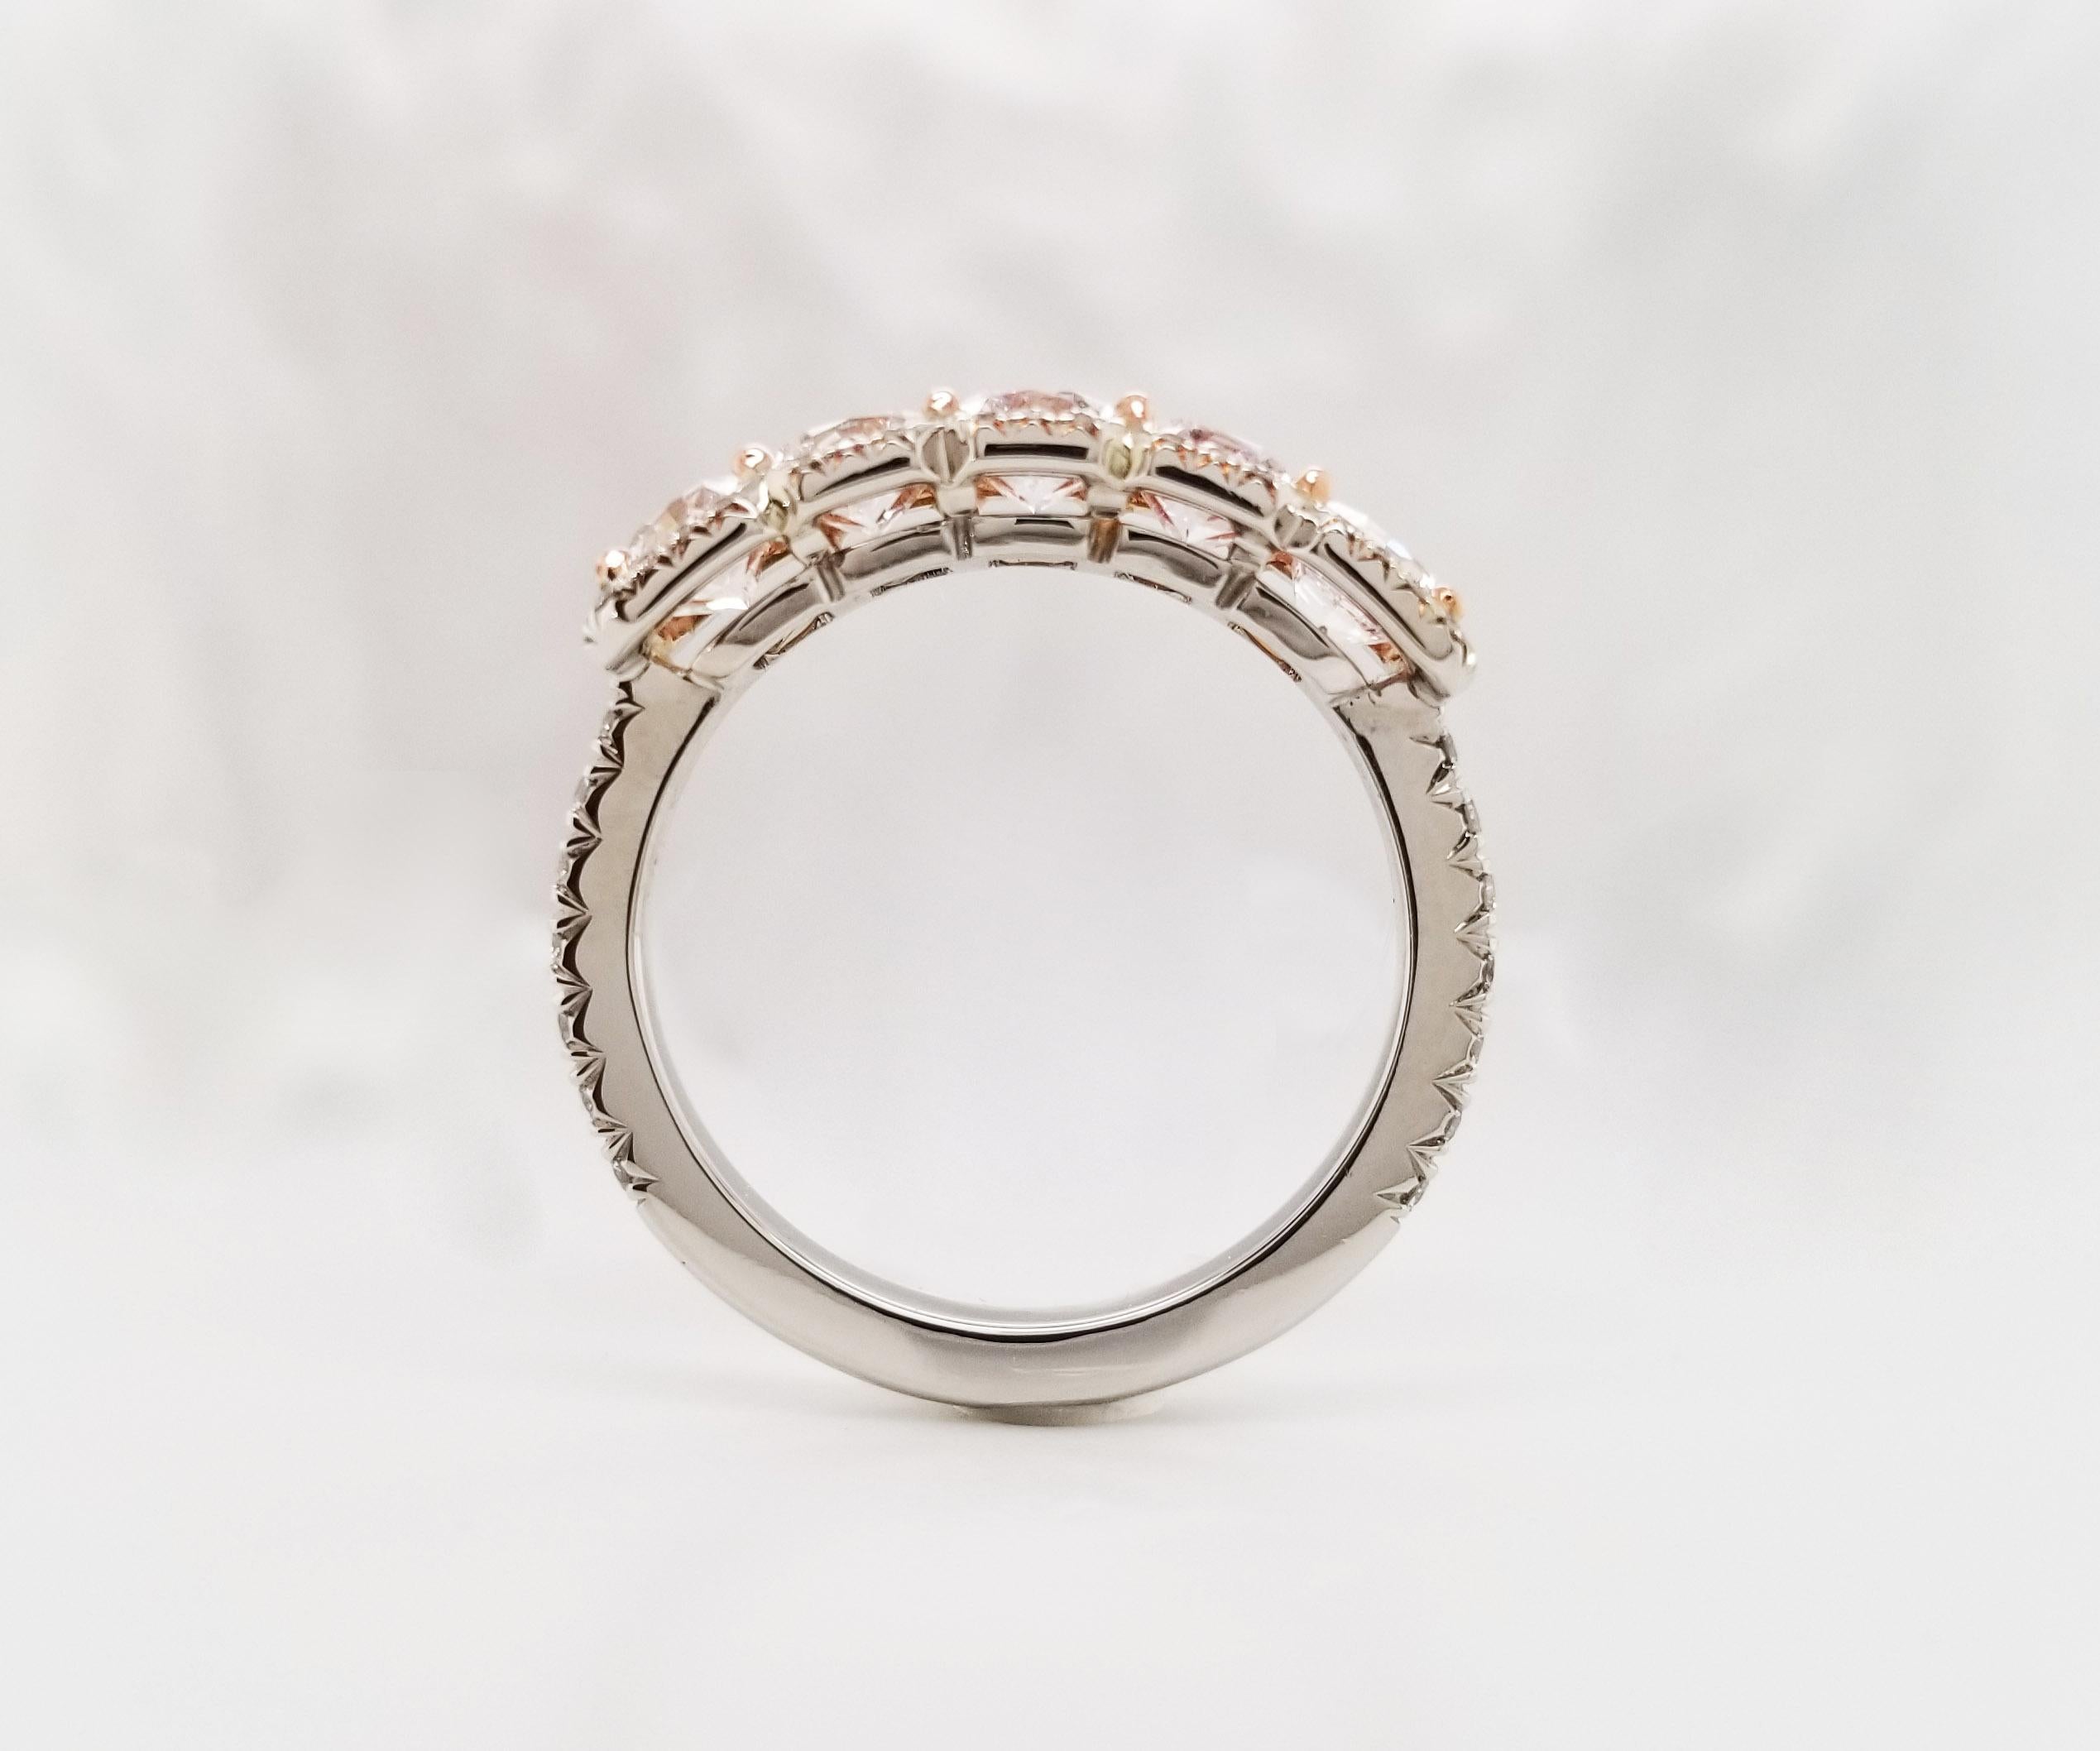 Radiant Cut Scarselli 2.17 Pink Diamond Band Ring in Platinum & 18 Karat Gold GIA Certified